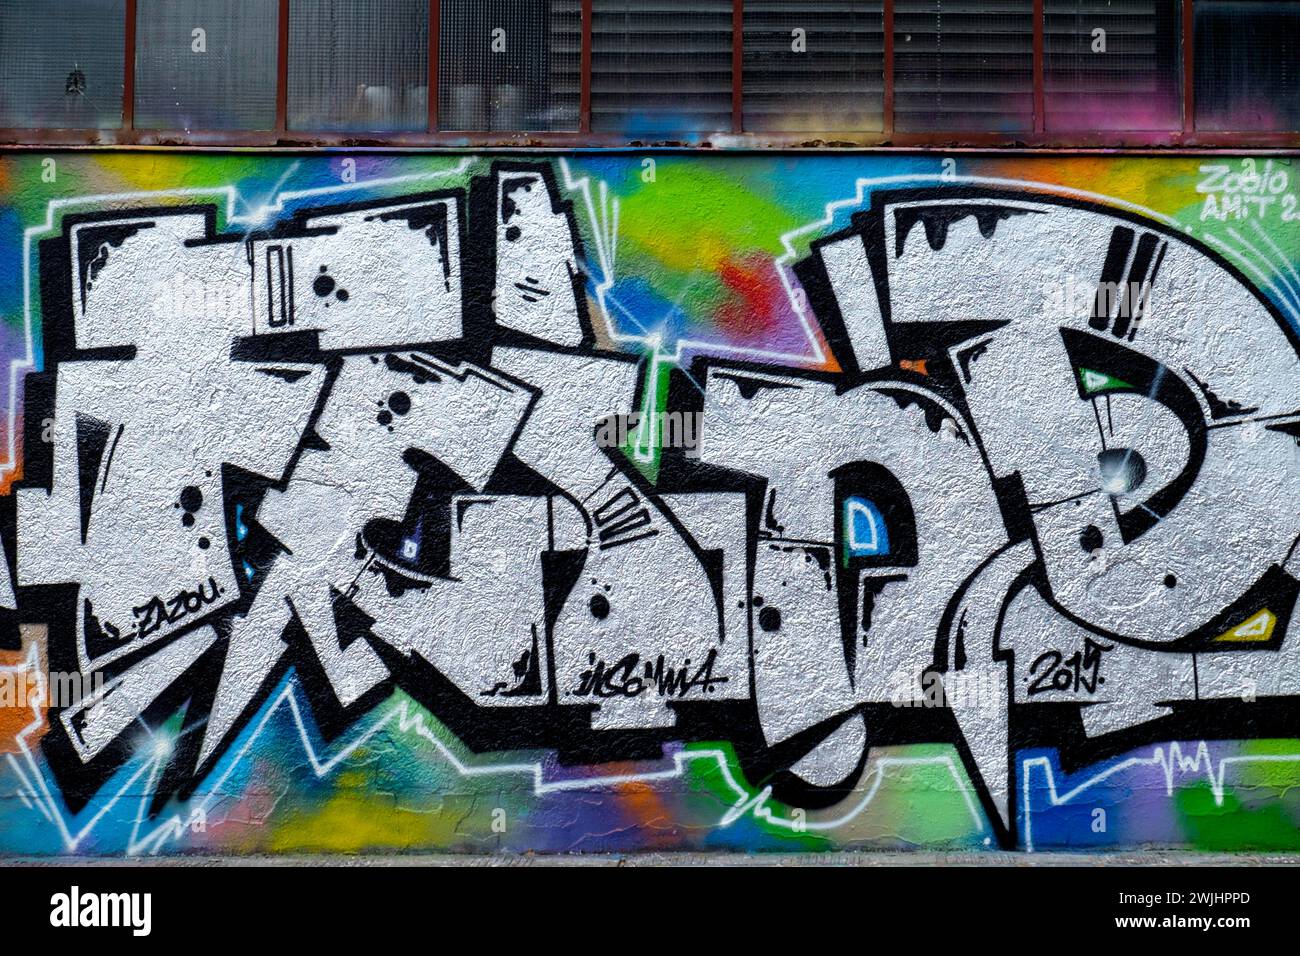 Graffiti avec des formes abstraites aux couleurs vives sur un mur urbain, Rhénanie-Palatinat, Allemagne Banque D'Images